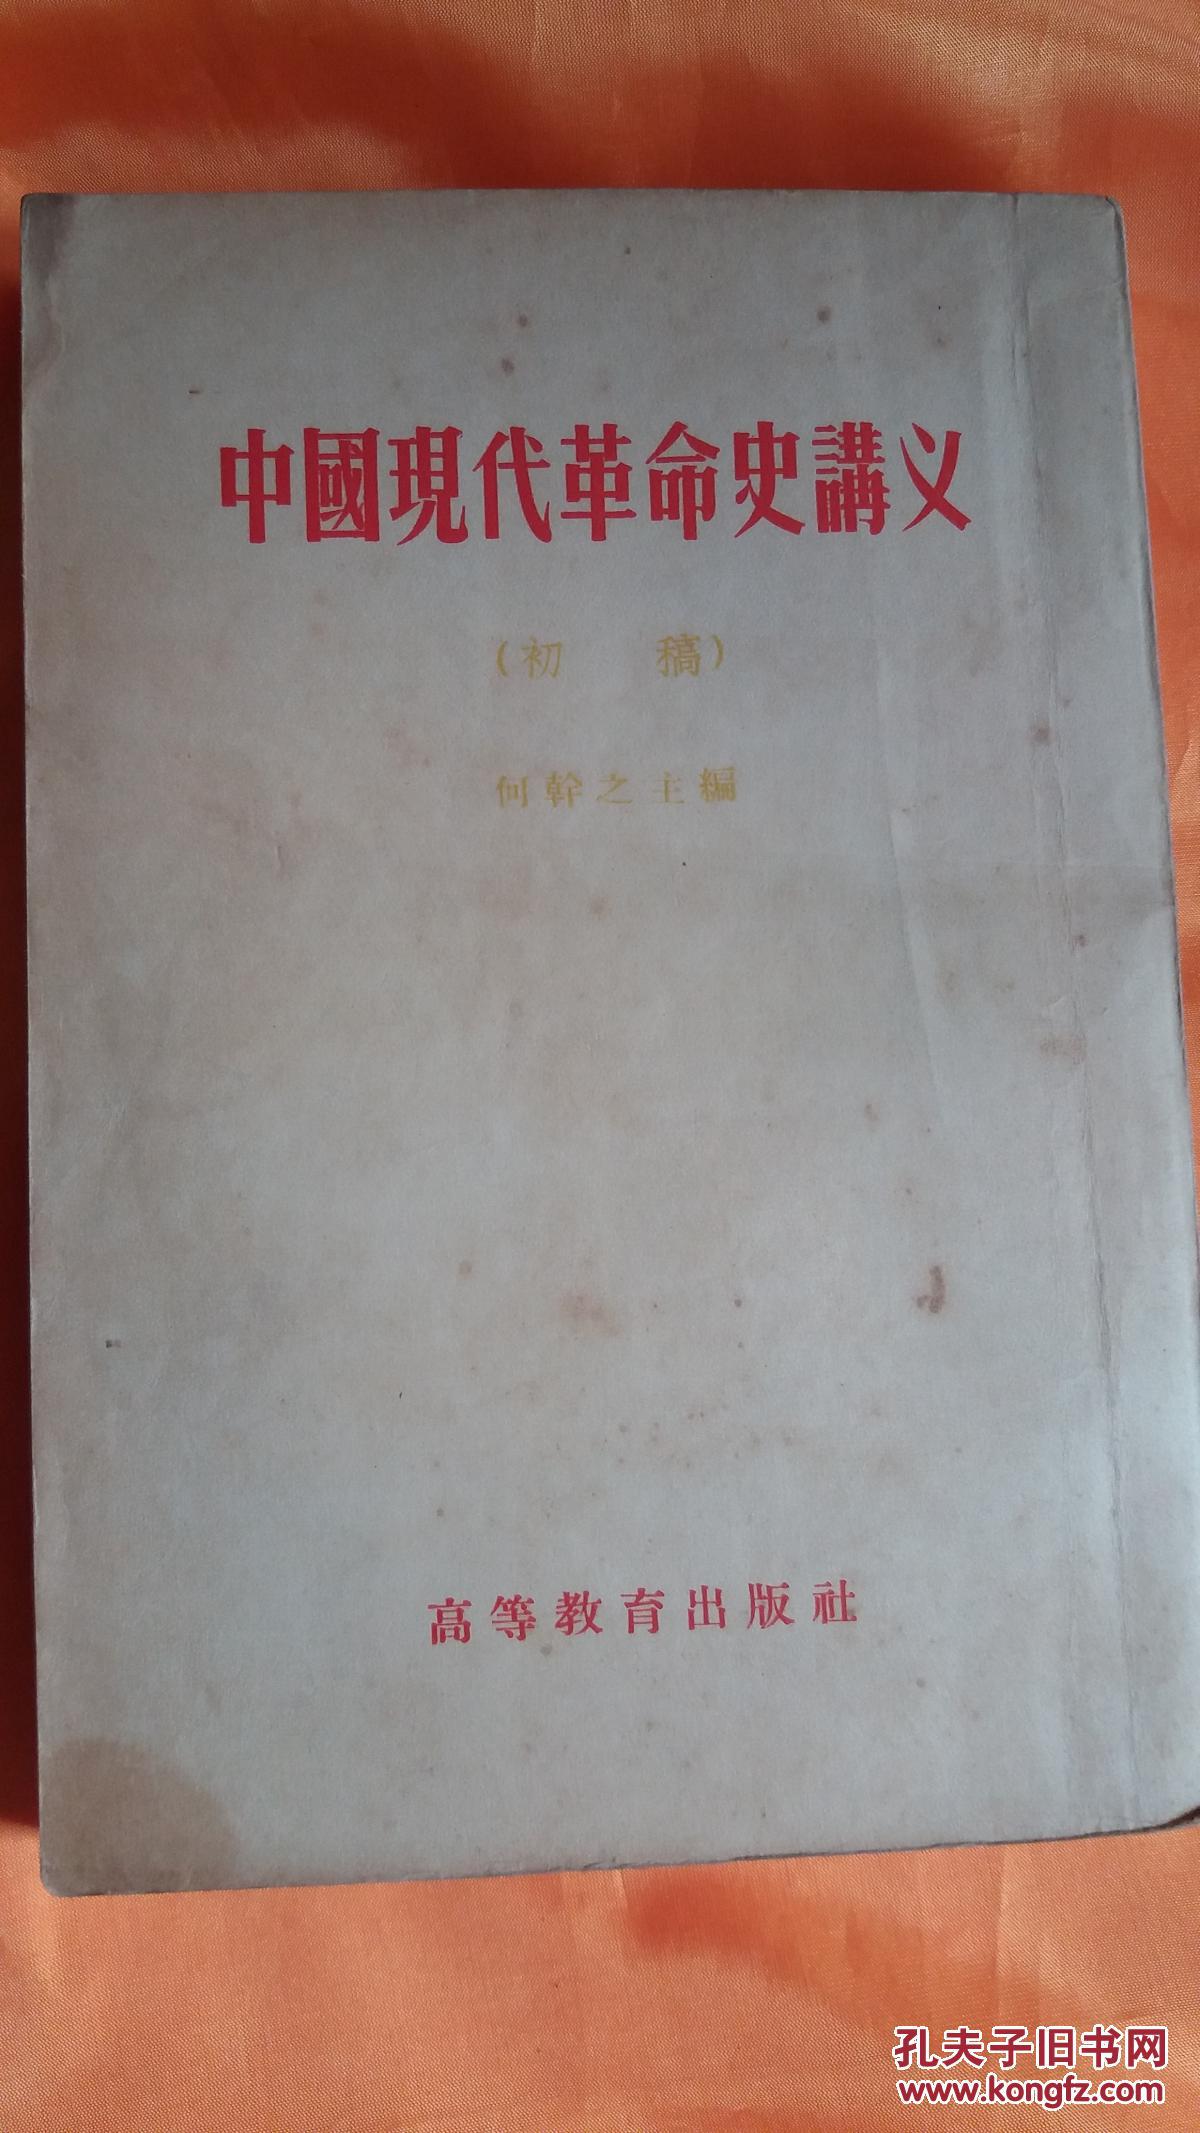 中国现代革命史讲义 （初稿）繁体竖版 何干之 高等教育出版社 1954年